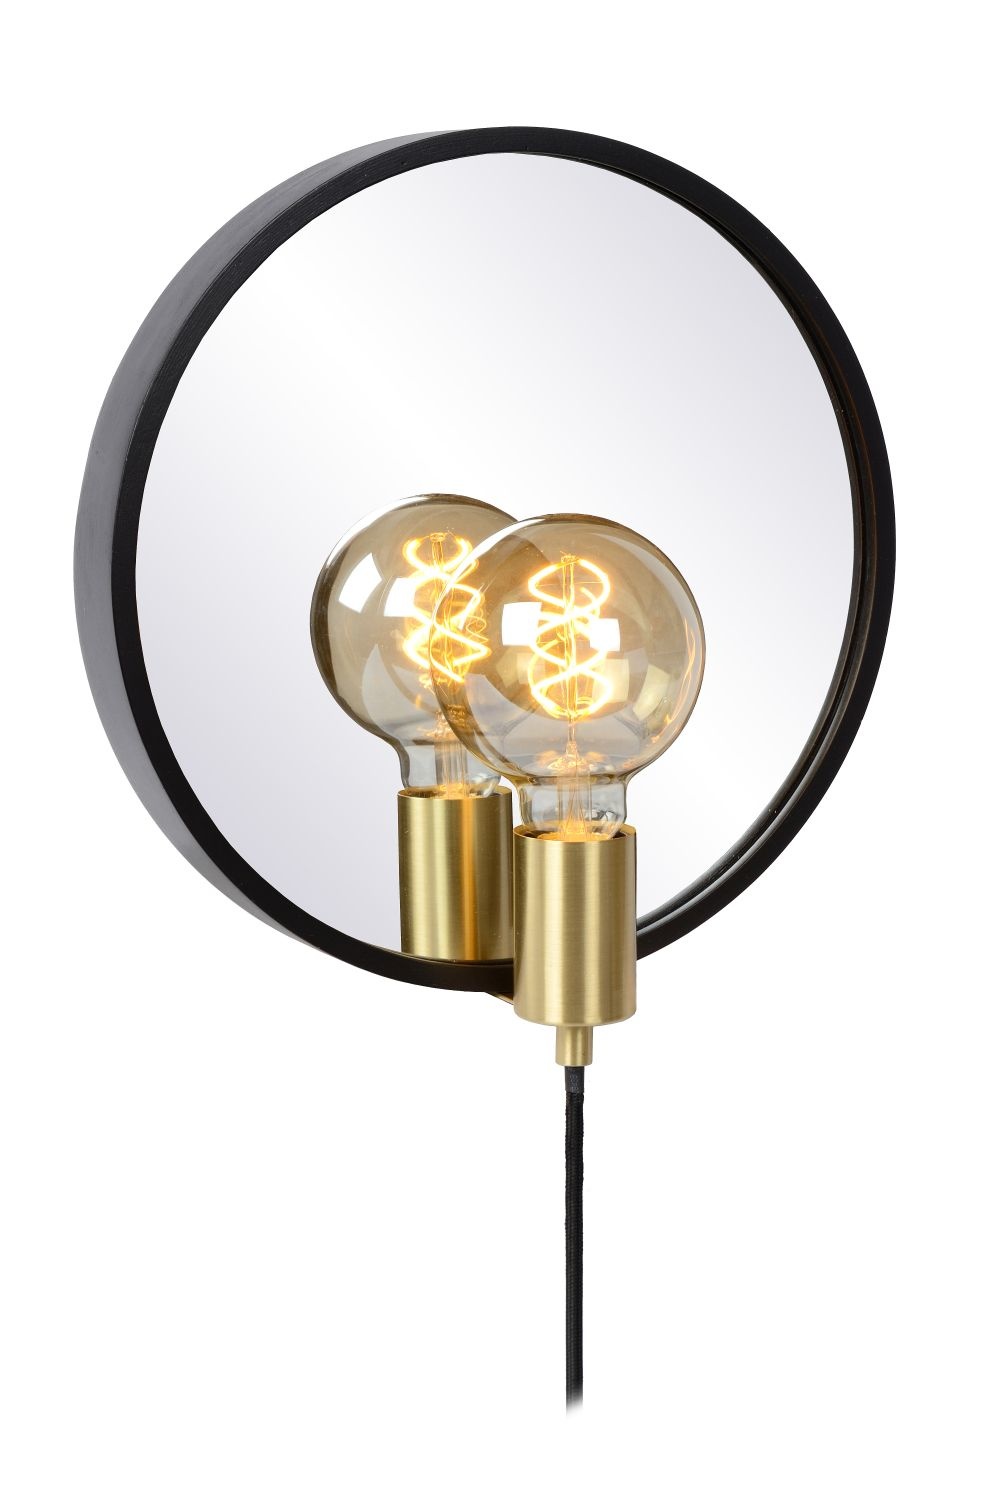 Ampoule filament ambre E27 LED - Lucide G95- 49032/05/62